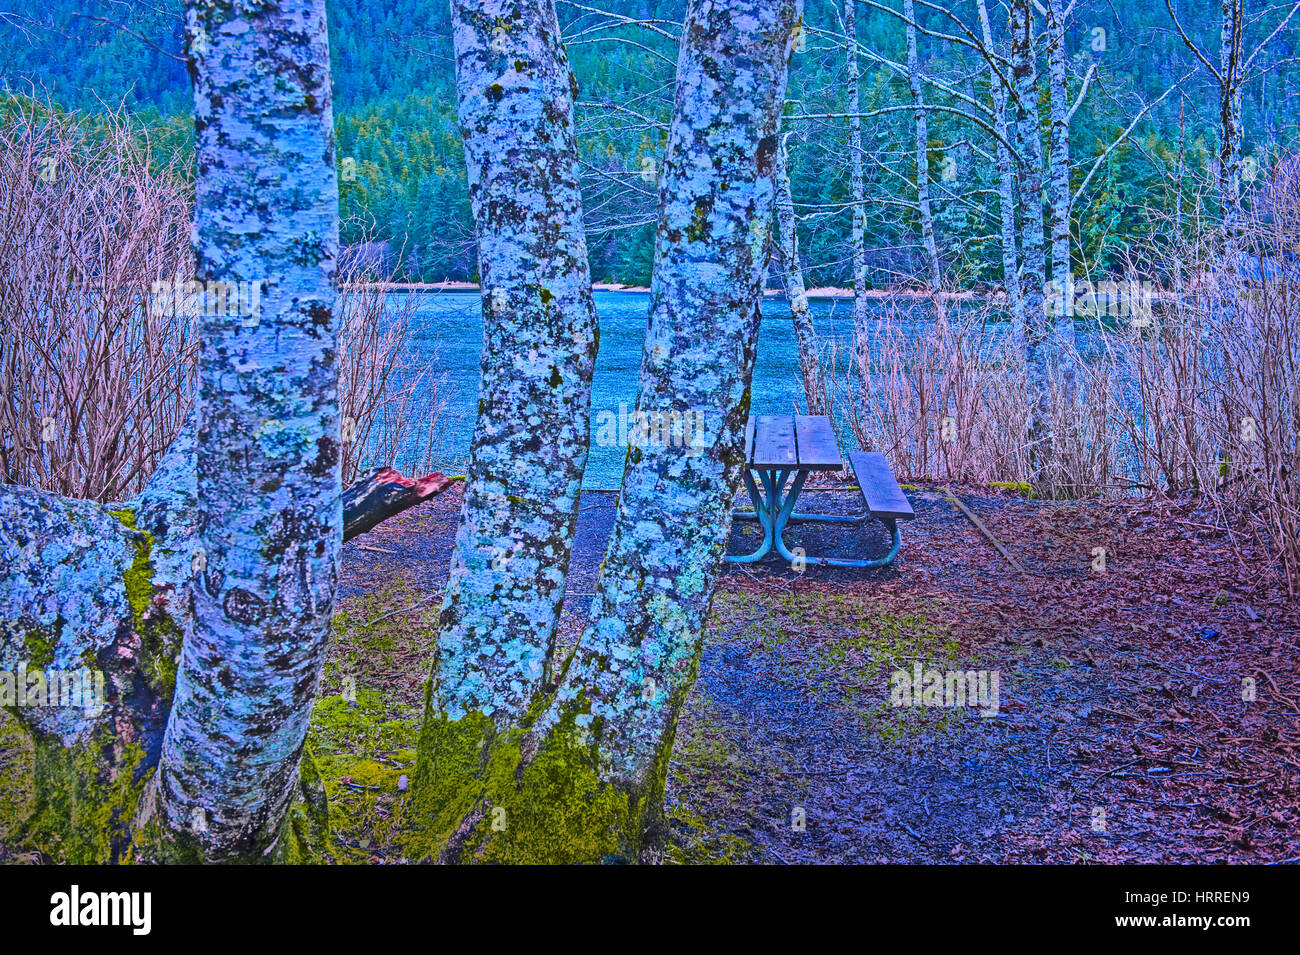 Picknickplatz am alten Sitka State Historical Park in der Nähe von Sitka, Alaska, USA. Fotografie von Jeffrey Wickett, NorthLight Fotografie. Stockfoto